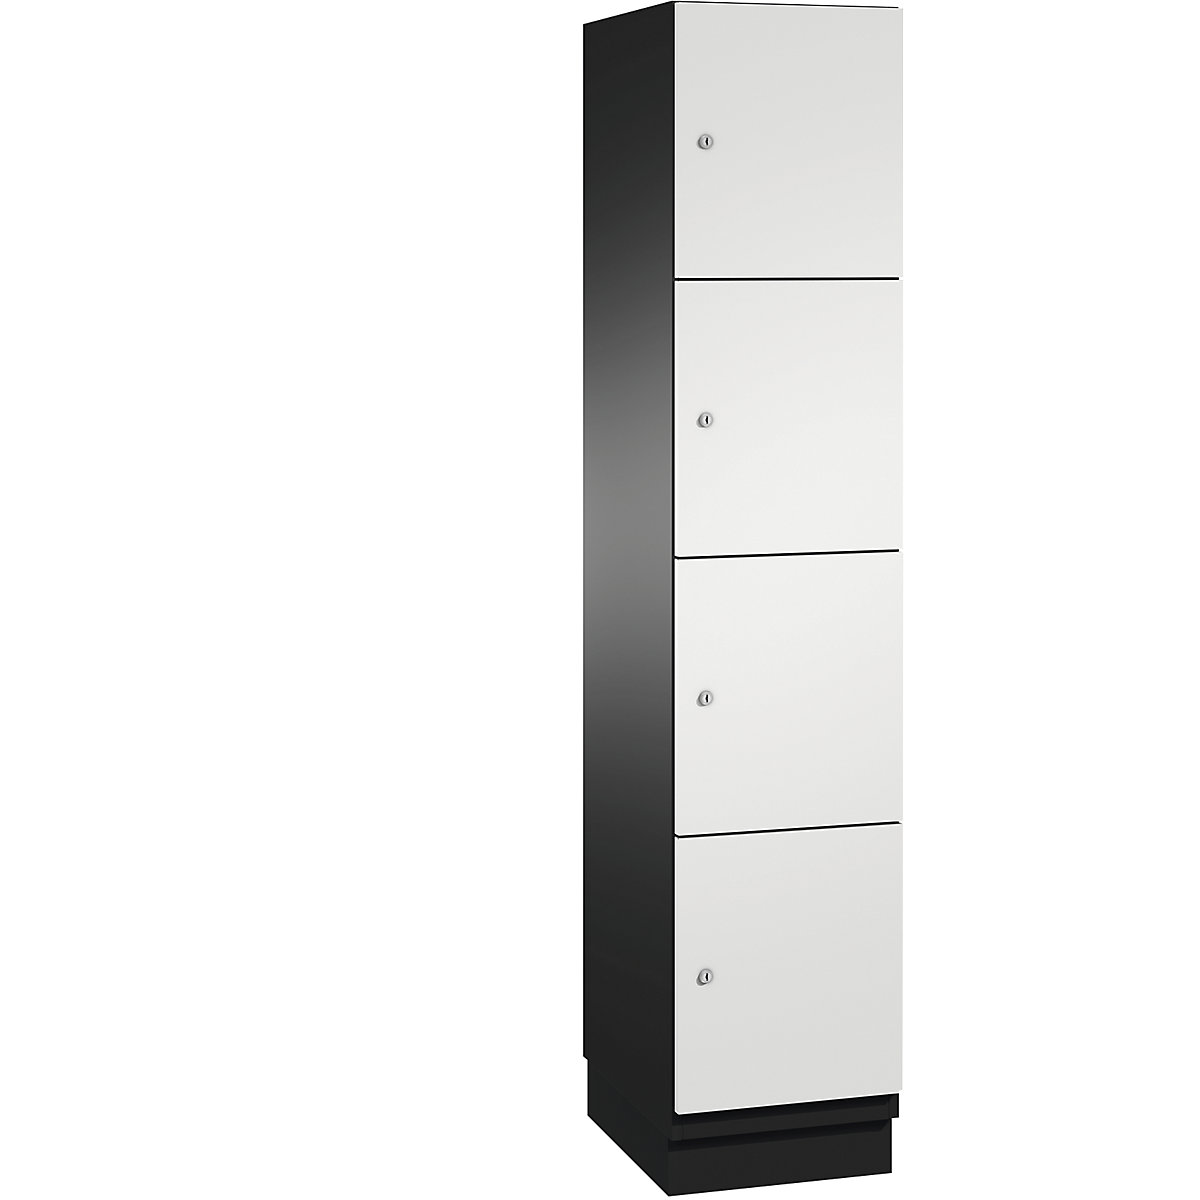 CAMBIO compartment locker with sheet steel doors – C+P, 4 compartments, width 400 mm, body black grey / door light grey-10